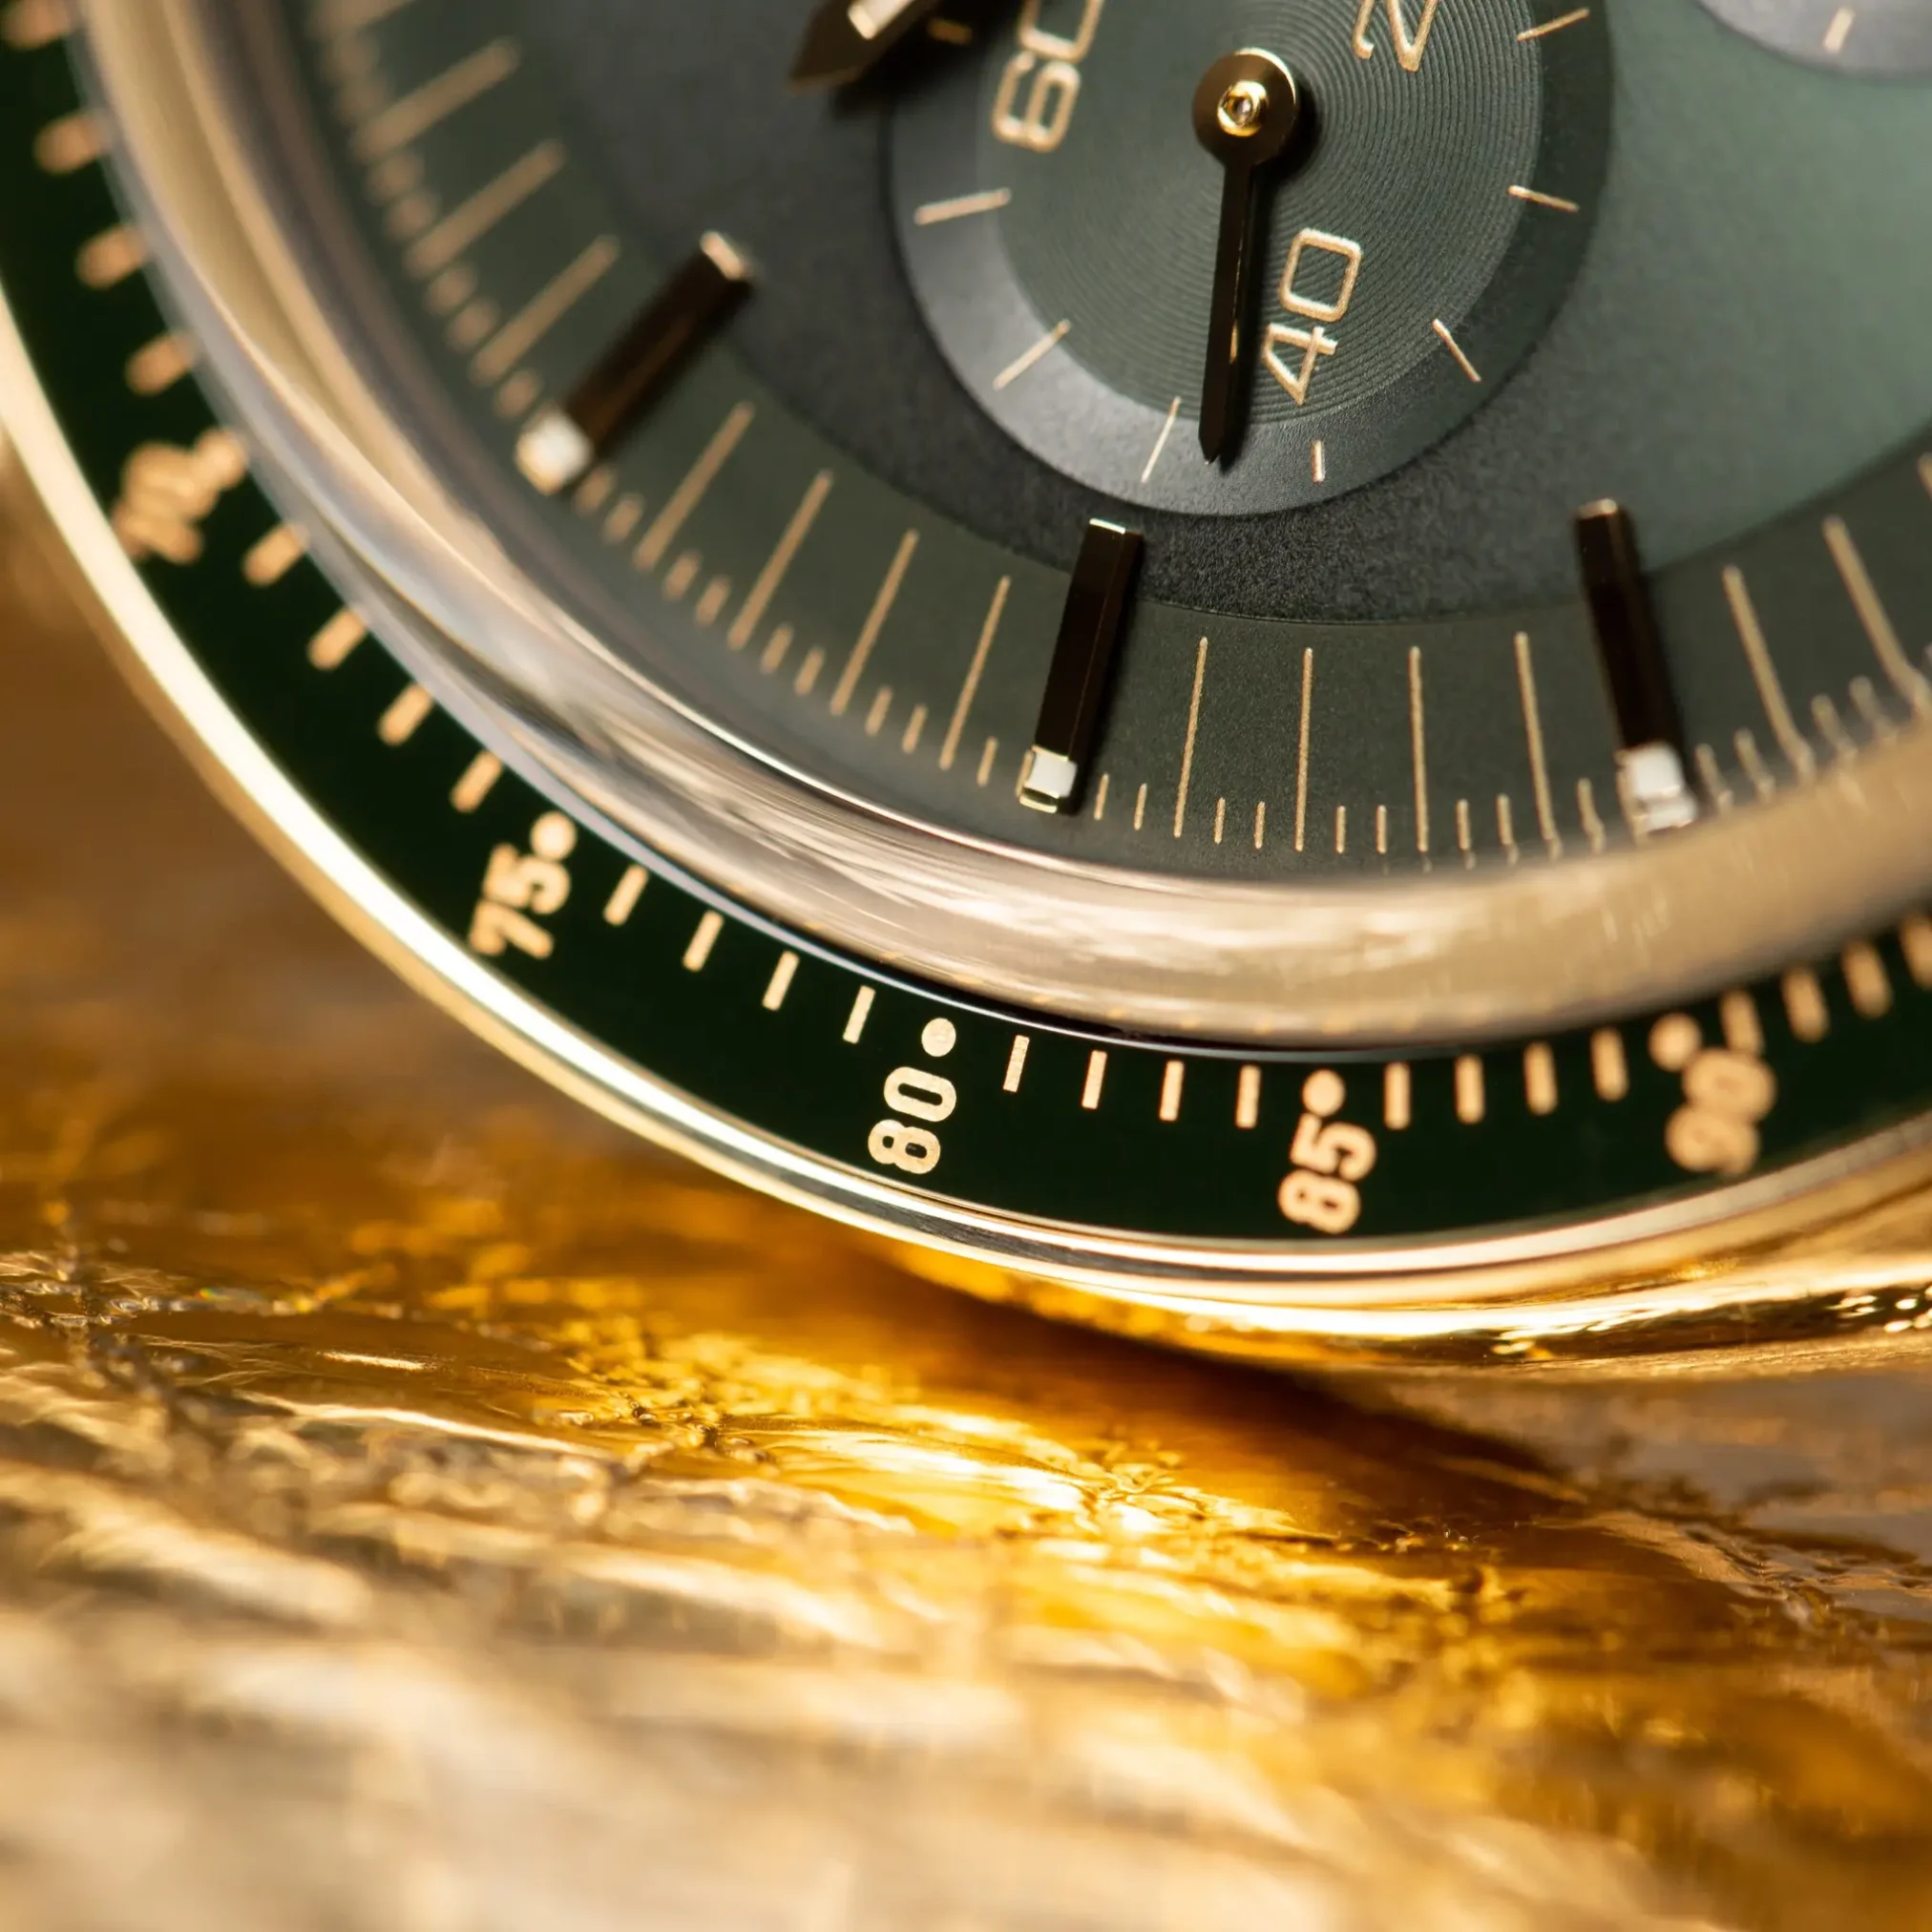 Đồng Hồ Omega Speedmaster Moonwatch Co-Axial Master Chronometer Chronograph 310.60.42.50.10.001 mặt số màu xanh thiết kế lộ cơ.Dây đeo bằng vàng khối.Thân vỏ bằng vàng khối